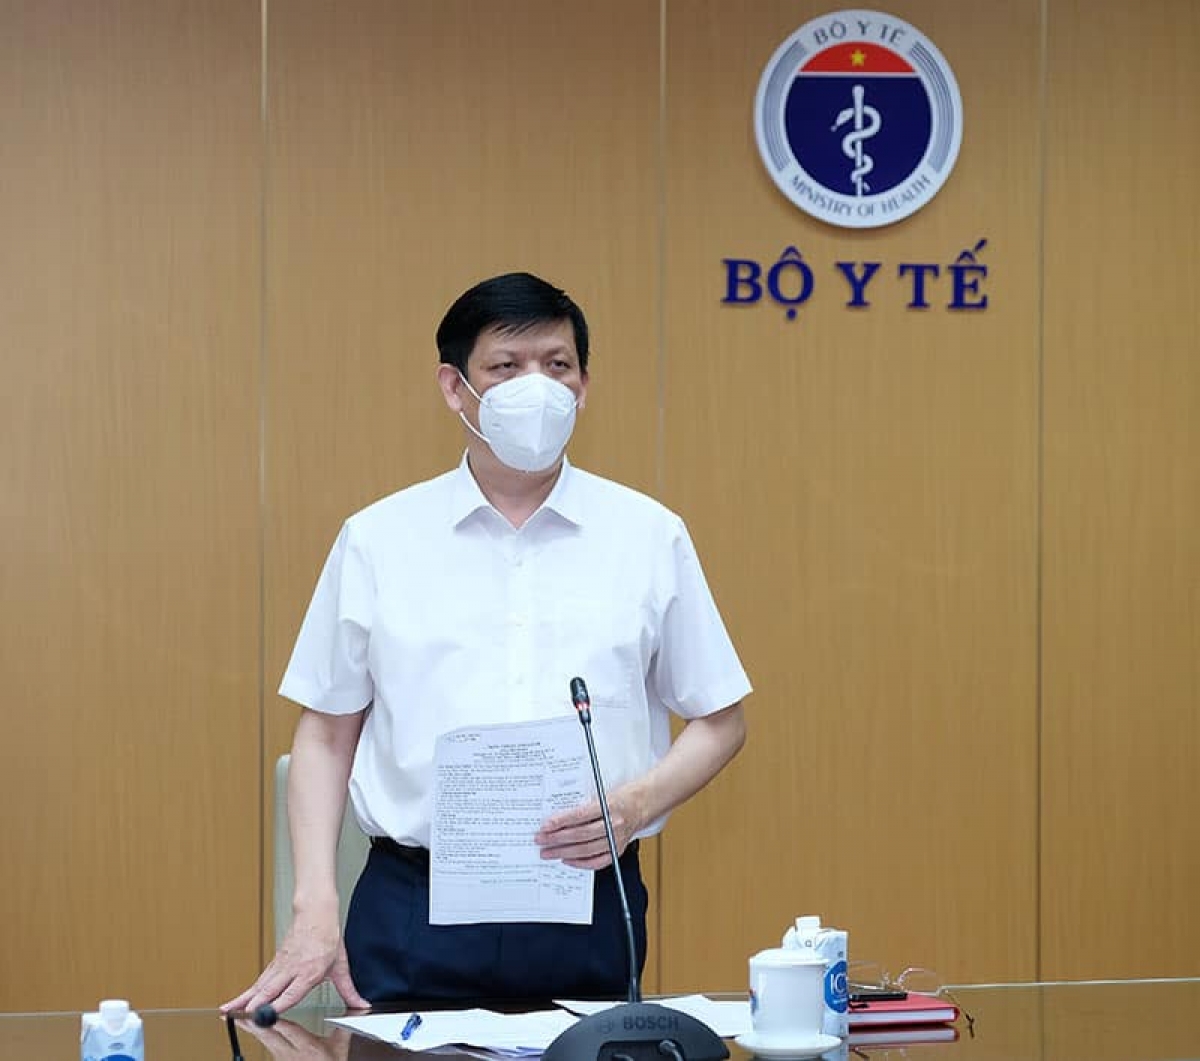 Bộ trưởng Bộ Y tế Nguyễn Thanh Long nhận định: "Thêm một thời gian nữa mới kiểm soát tốt được tình hình"